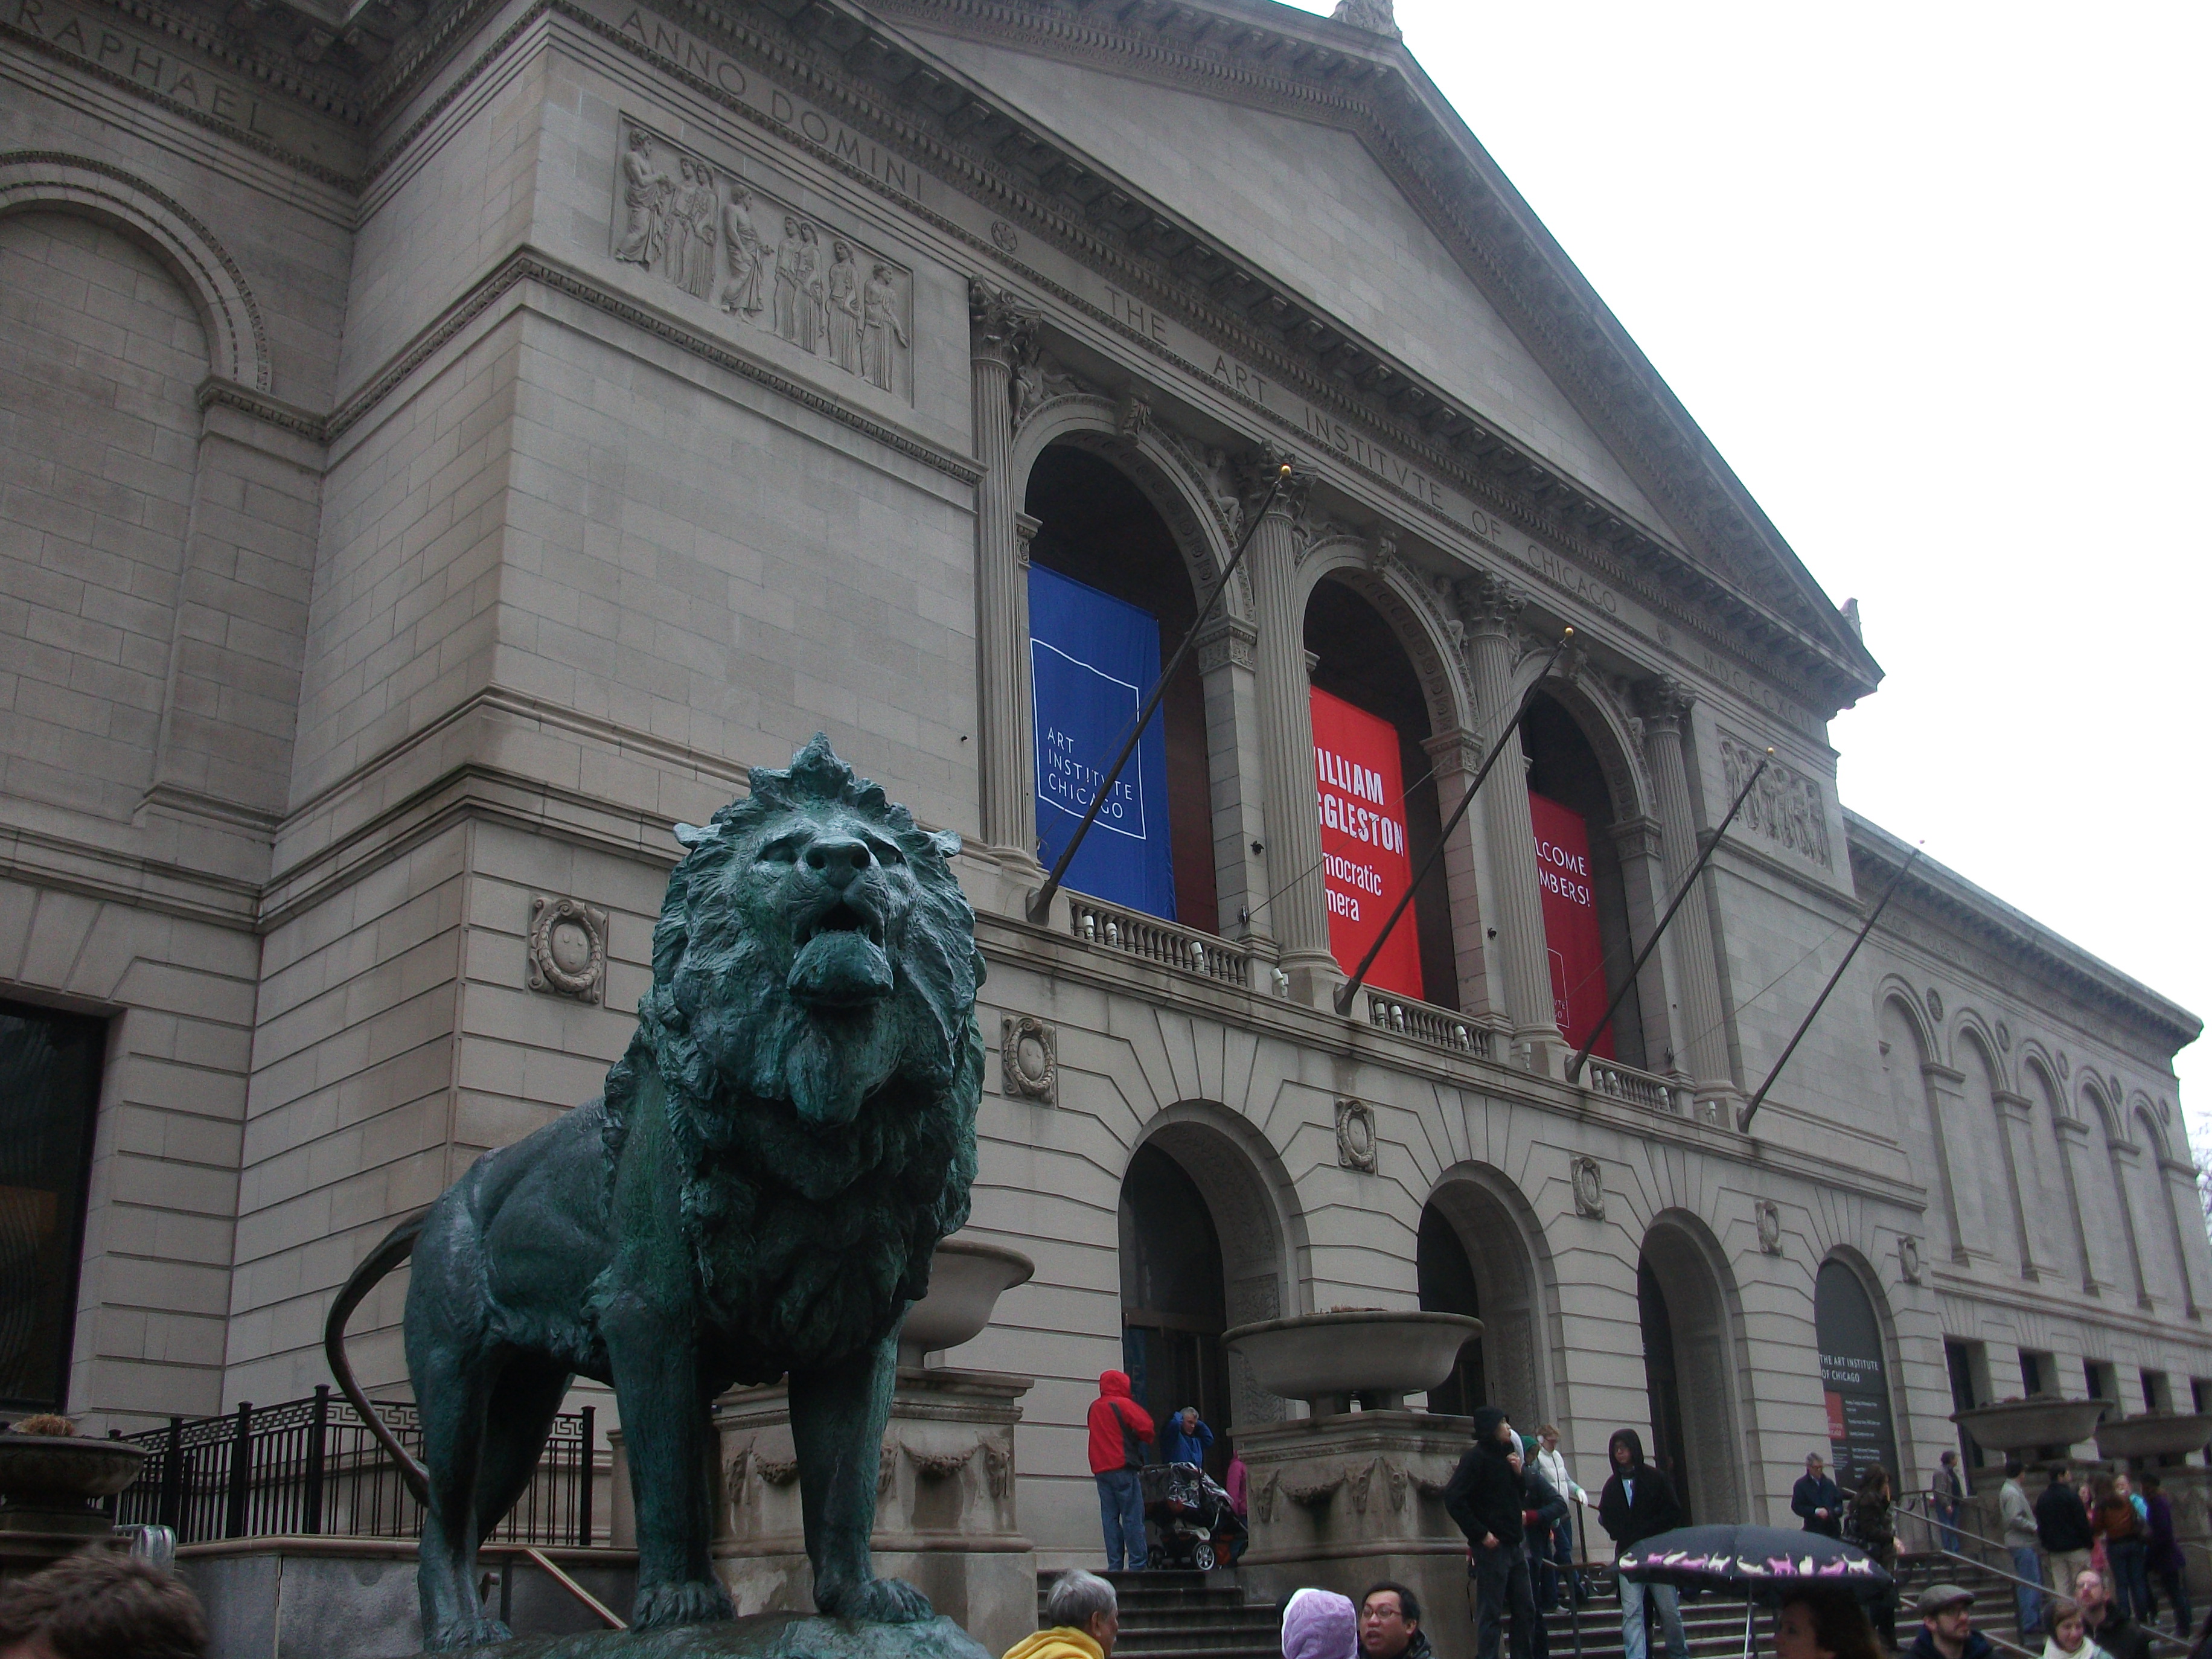 art institute of chicago